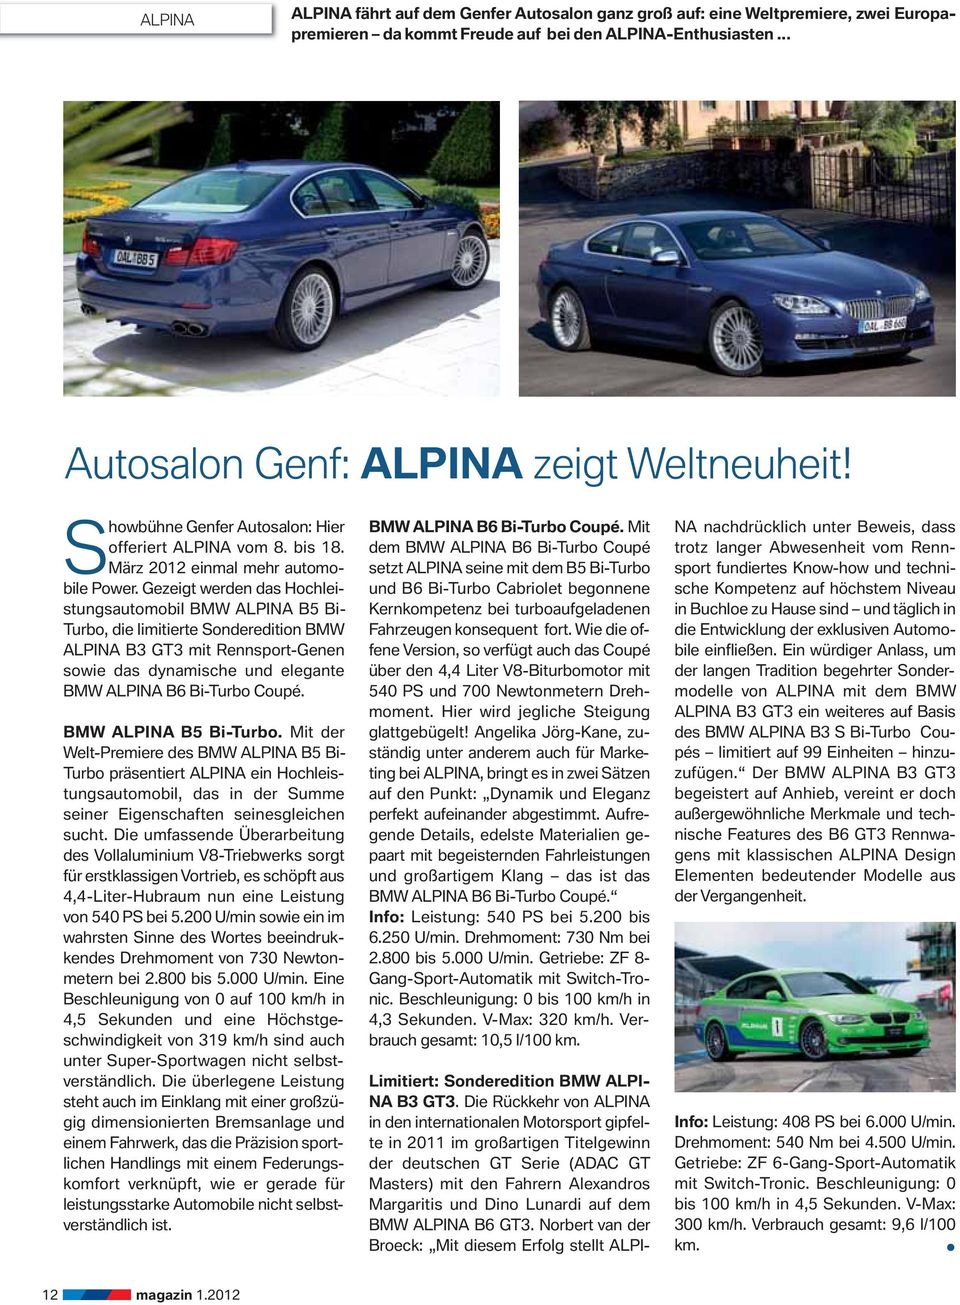 Gezeigt werden das Hochleistungsautomobil BMW ALPINA B5 Bi- Turbo, die limitierte Sonderedition BMW ALPINA B3 GT3 mit Rennsport-Genen sowie das dynamische und elegante BMW ALPINA B6 Bi-Turbo Coupé.